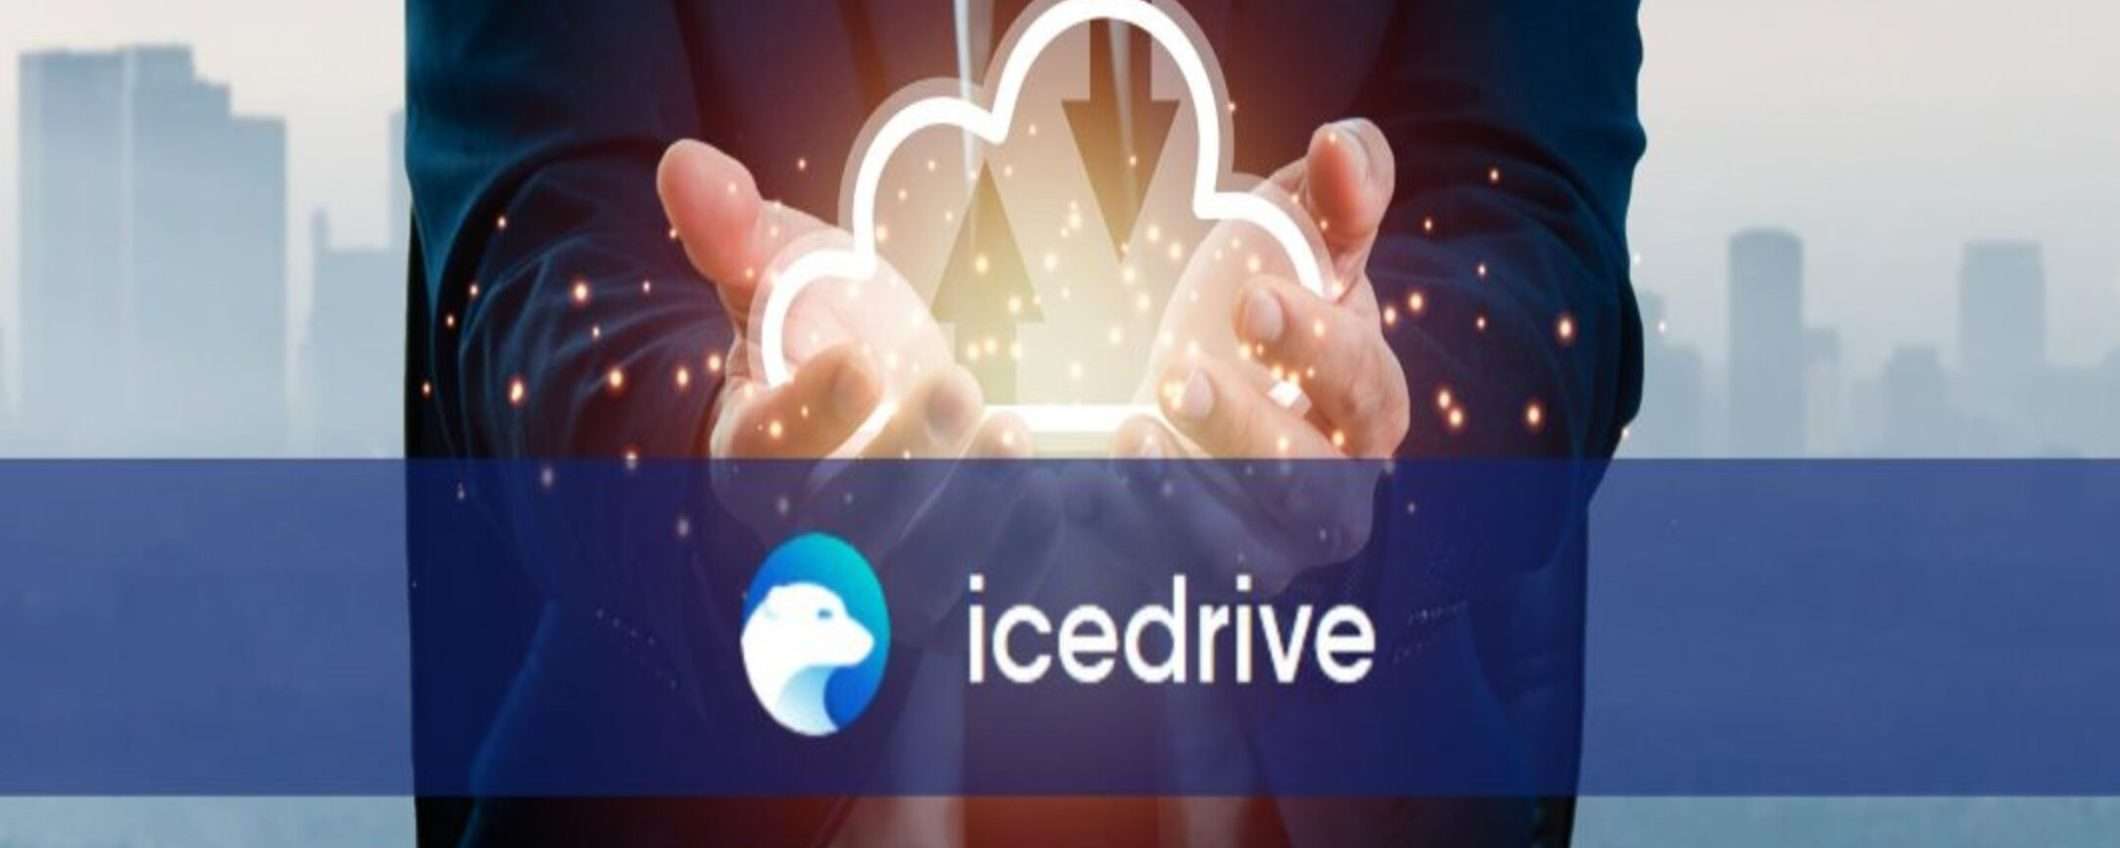 IceDrive: la scelta intelligente per un cloud sicuro e conveniente